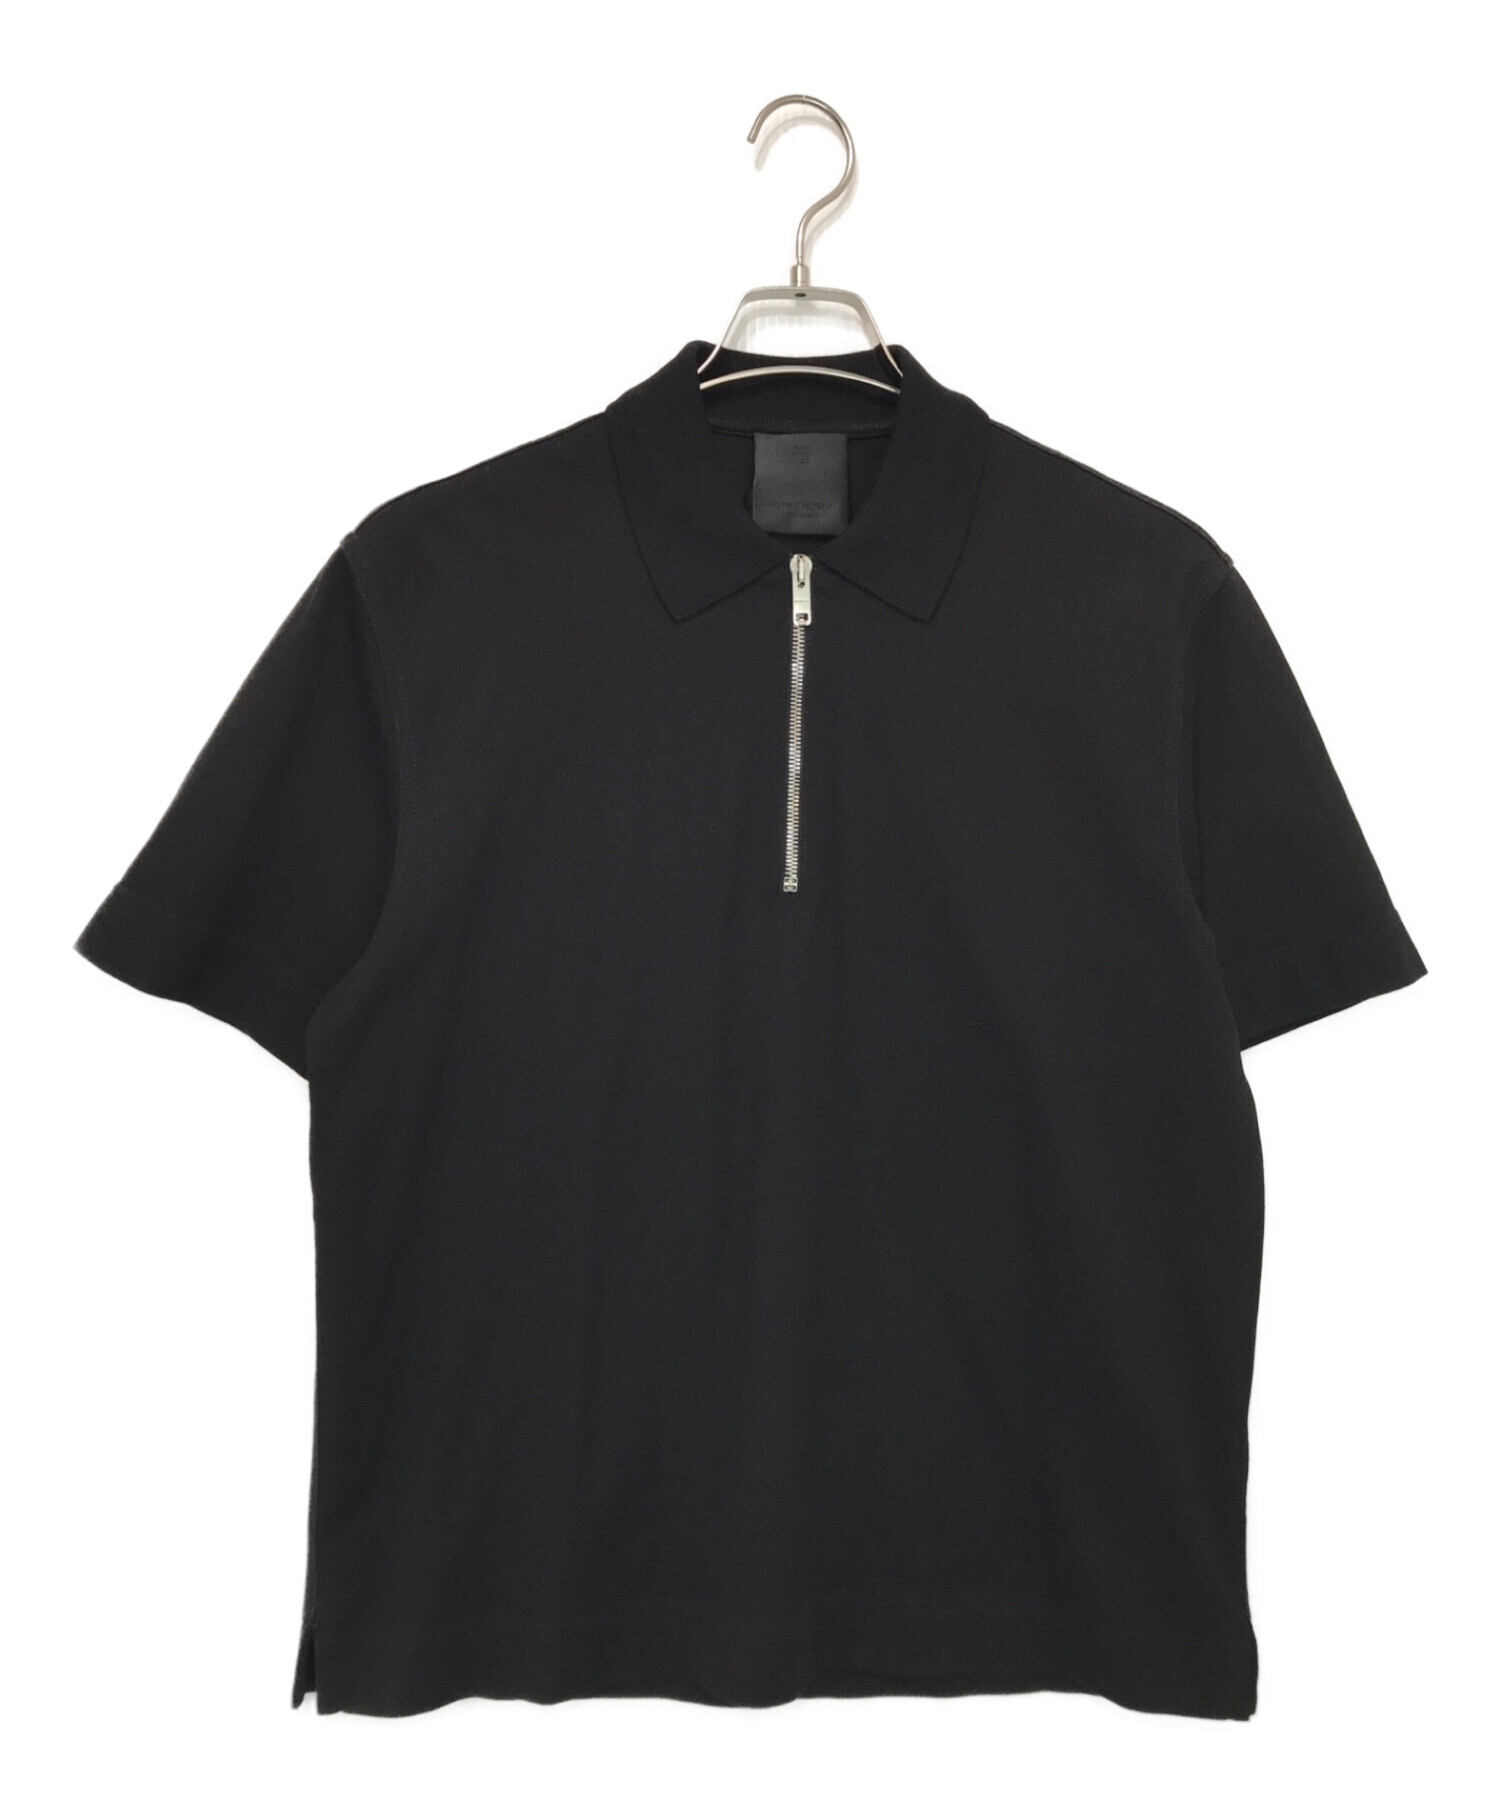 GIVENCHY (ジバンシィ) ジップ付きコットンポロシャツ ブラック サイズ:S